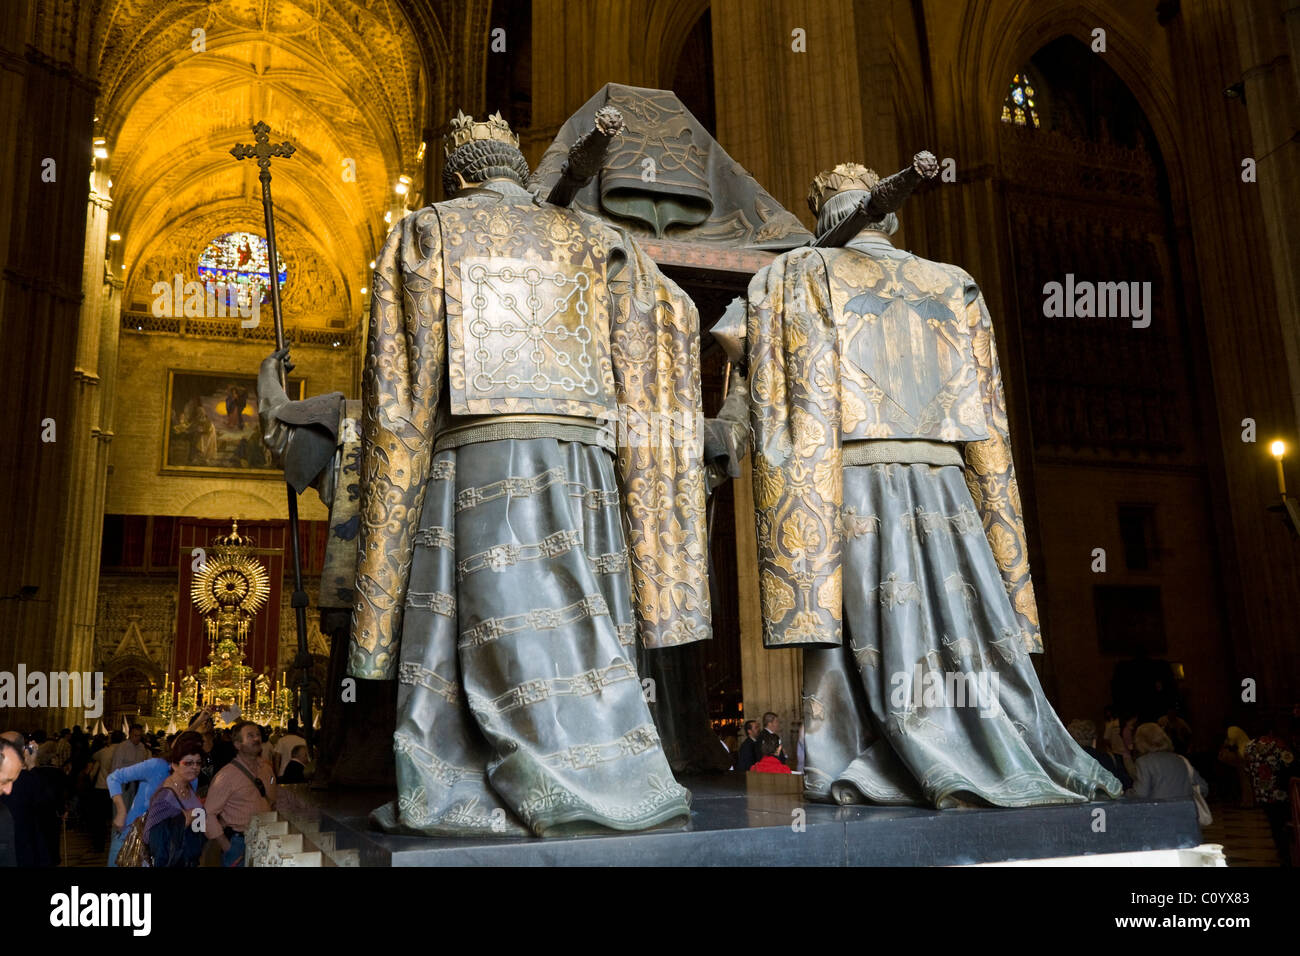 Grab von Christopher Columbus & Innenraum und Altar der Kathedrale von Sevilla während der Semana Santa Ostern Karwoche. Sevilla, Spanien. Stockfoto